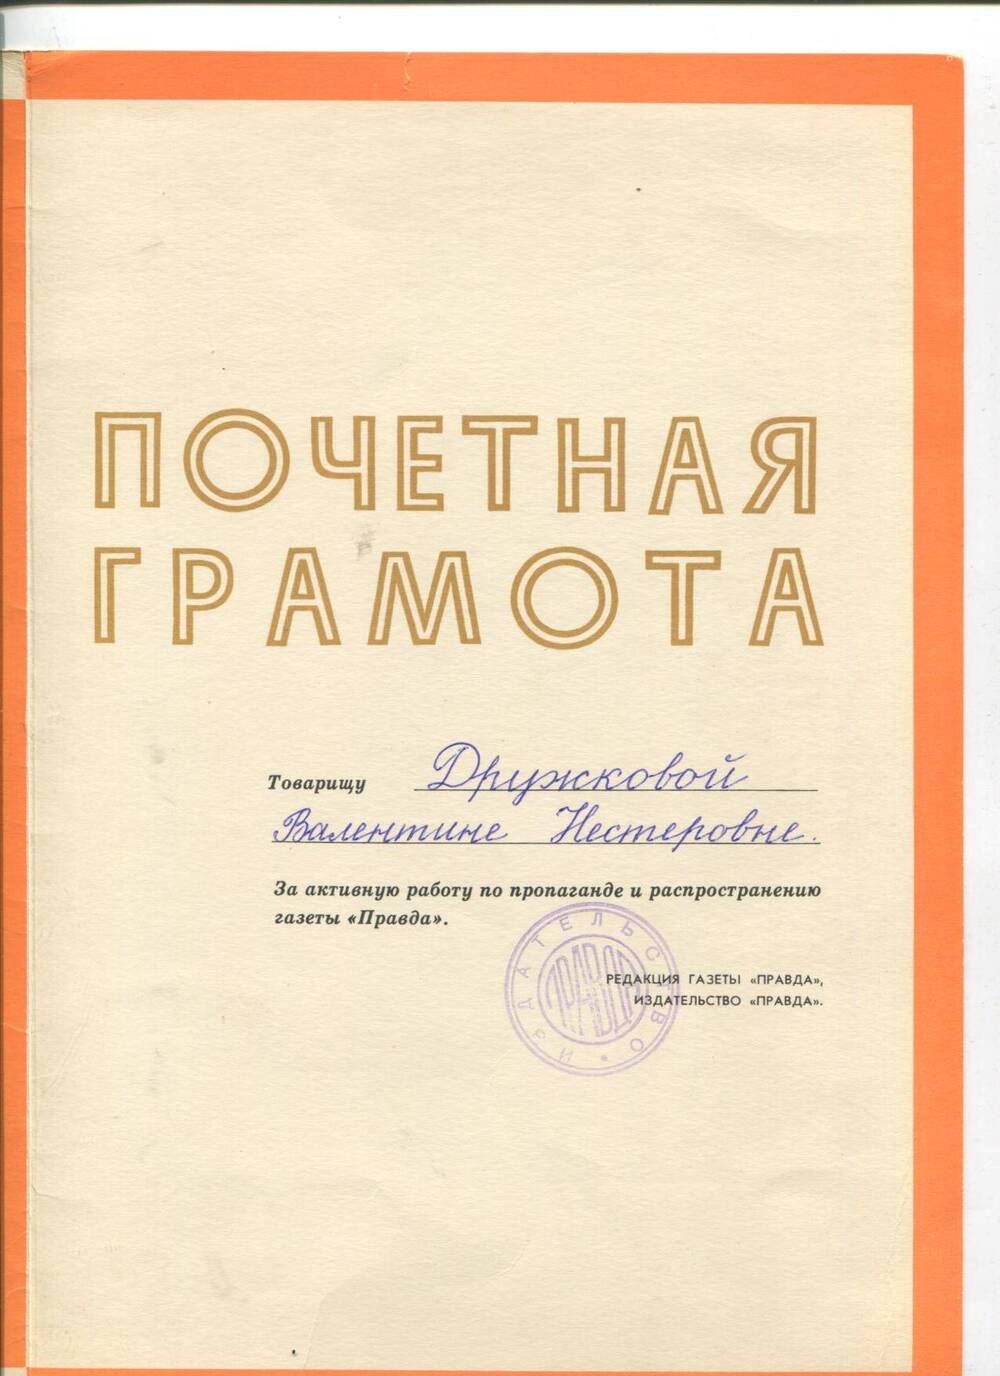 Почетная грамота В.Н.Дружковой. 1970-е года.